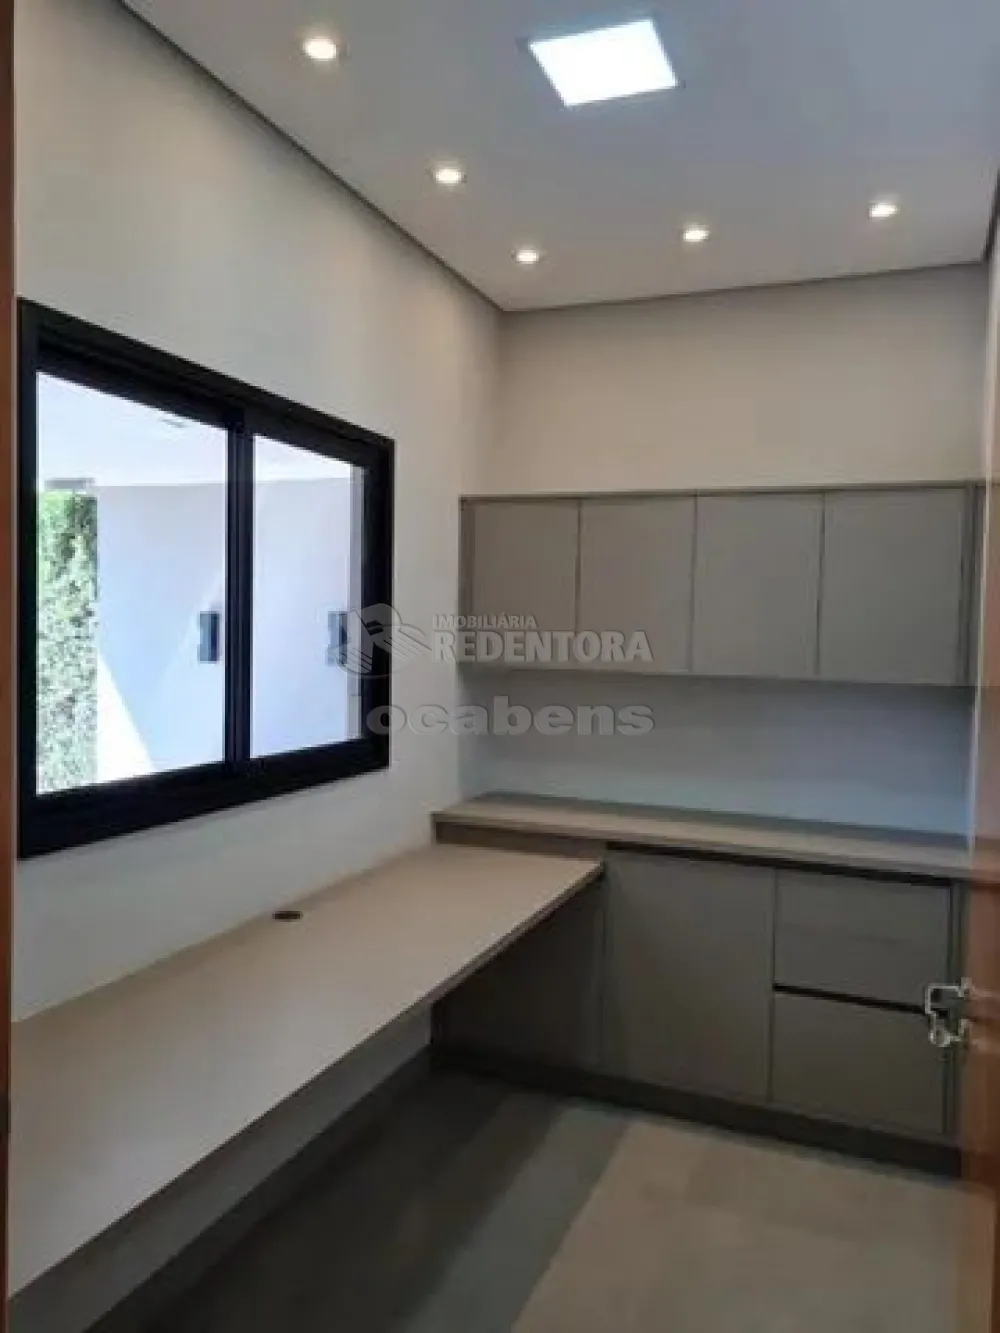 Comprar Casa / Condomínio em Mirassol apenas R$ 1.190.000,00 - Foto 5